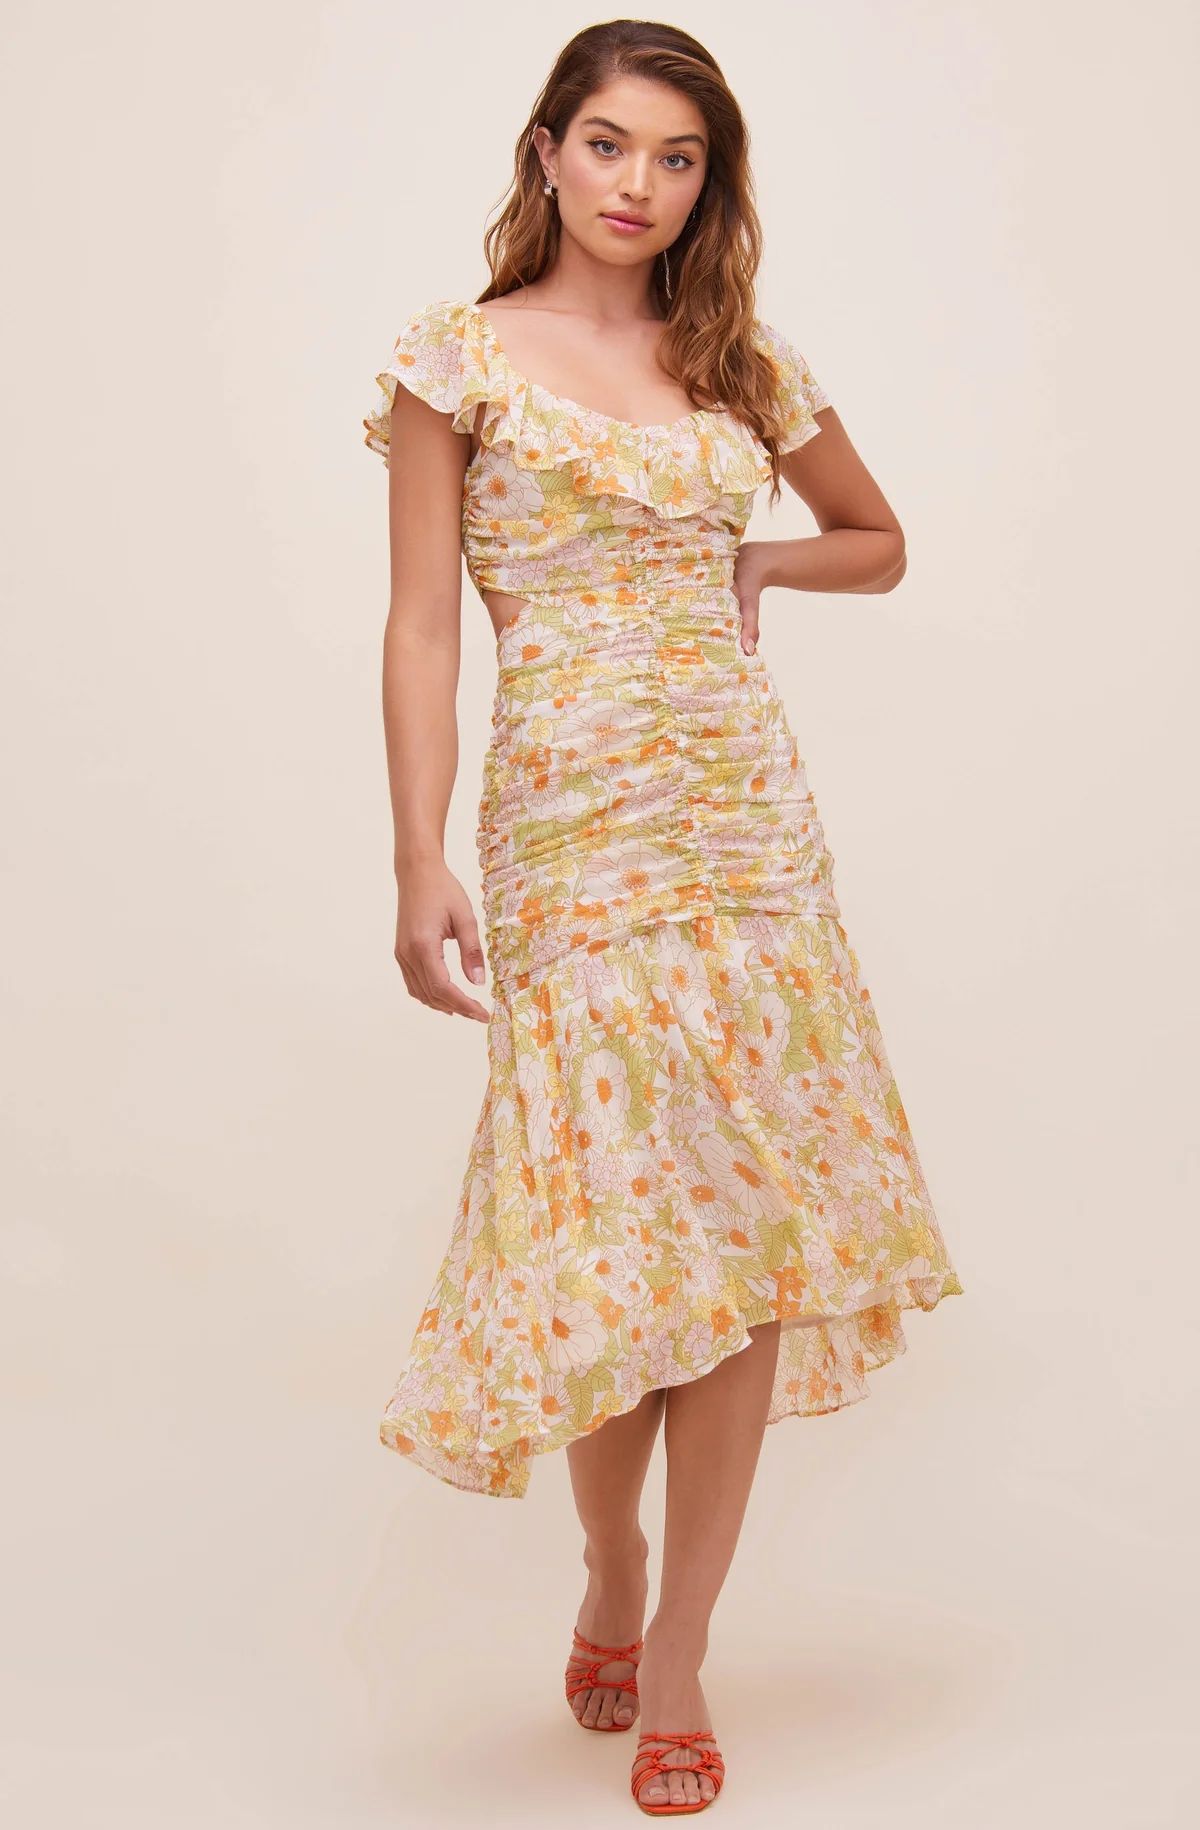 Devereaux Cutout Floral Dress | ASTR The Label (US)